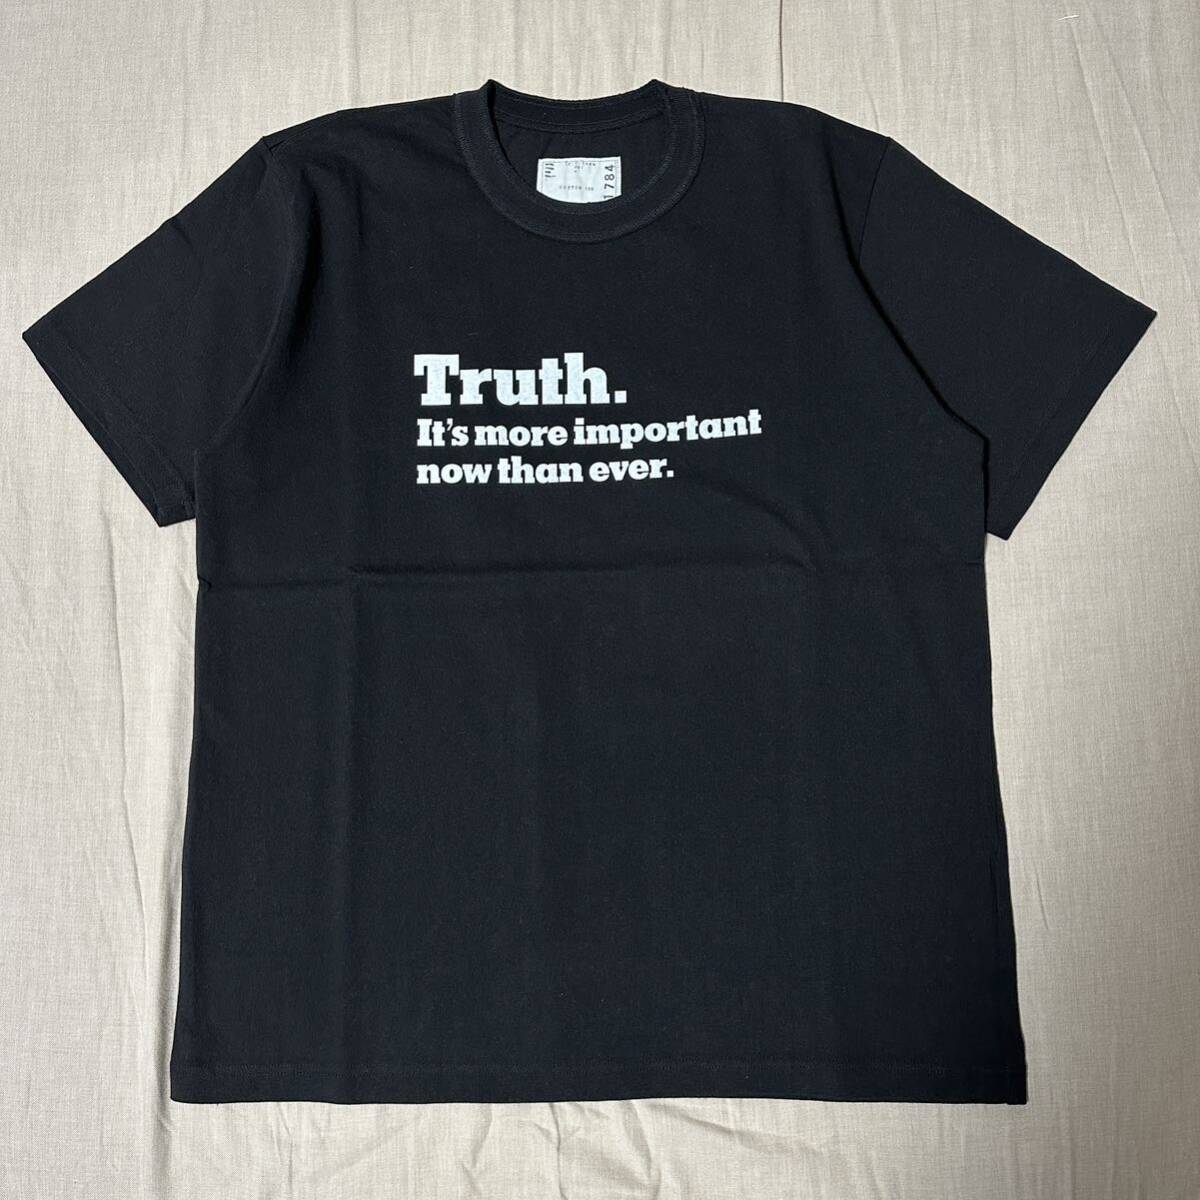 未使用品 希少 sacai×The New York Times 18AW Truth. Tシャツ Size4 Black カットソー スウェット パーカー デニム ブルゾン